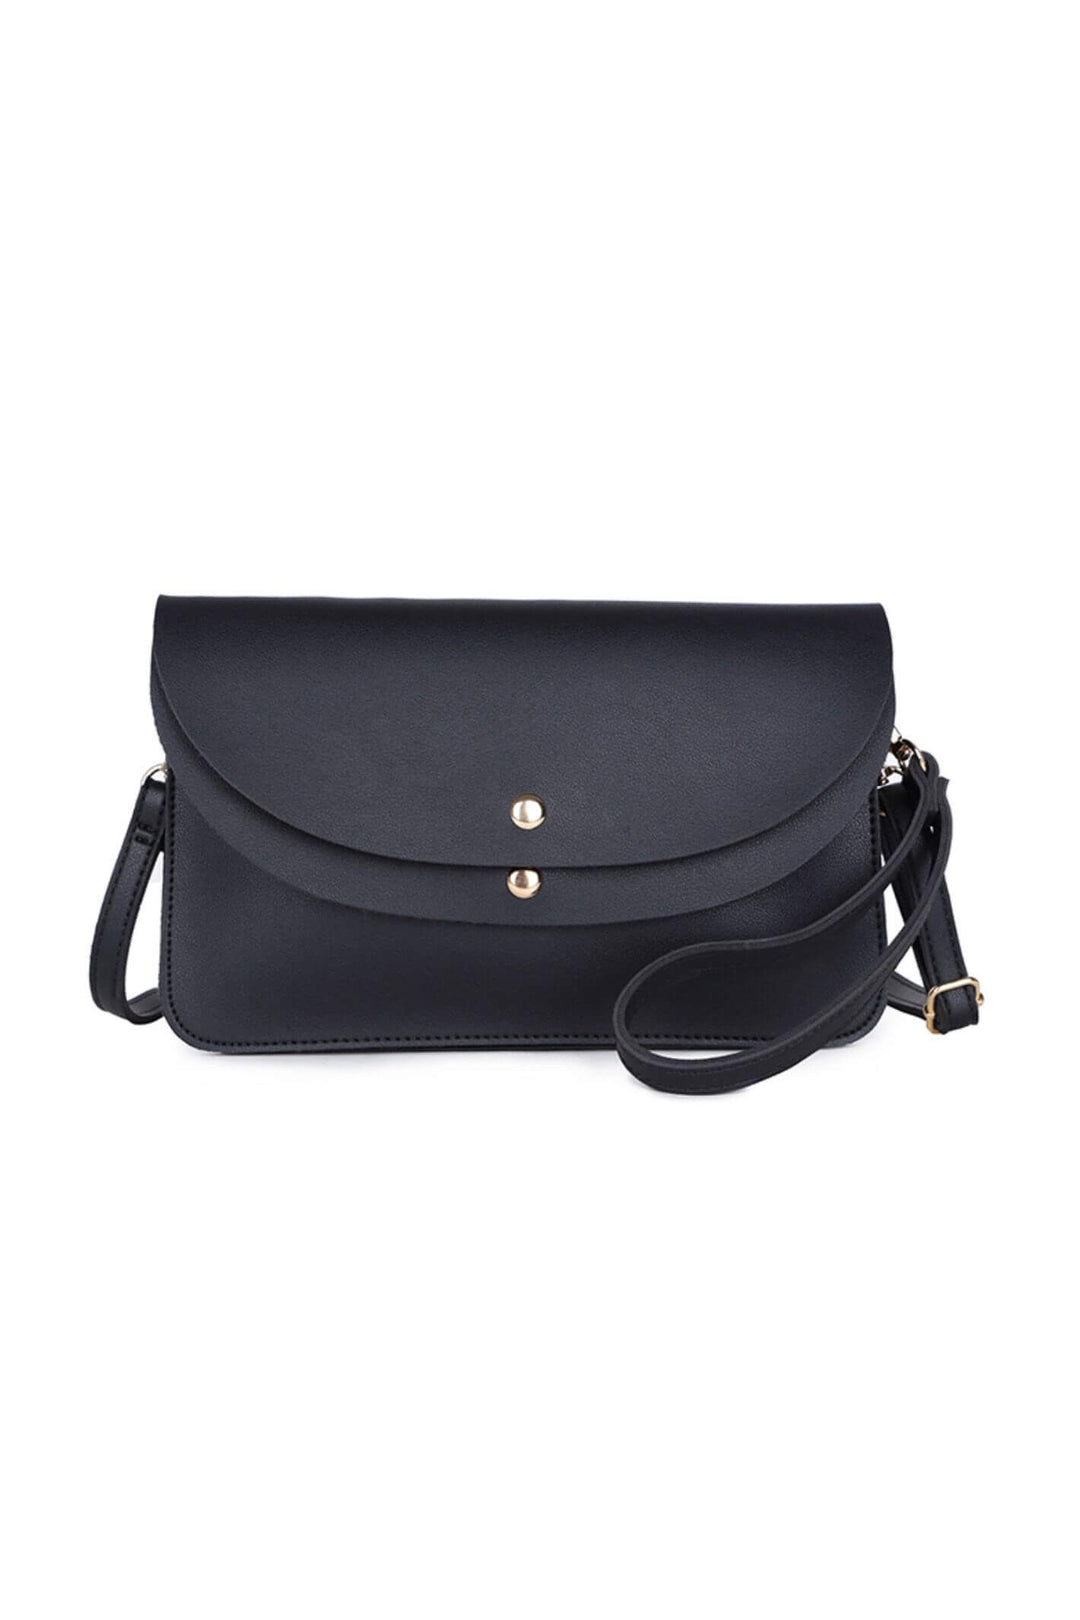 Black Envelope Style Clutch Bag